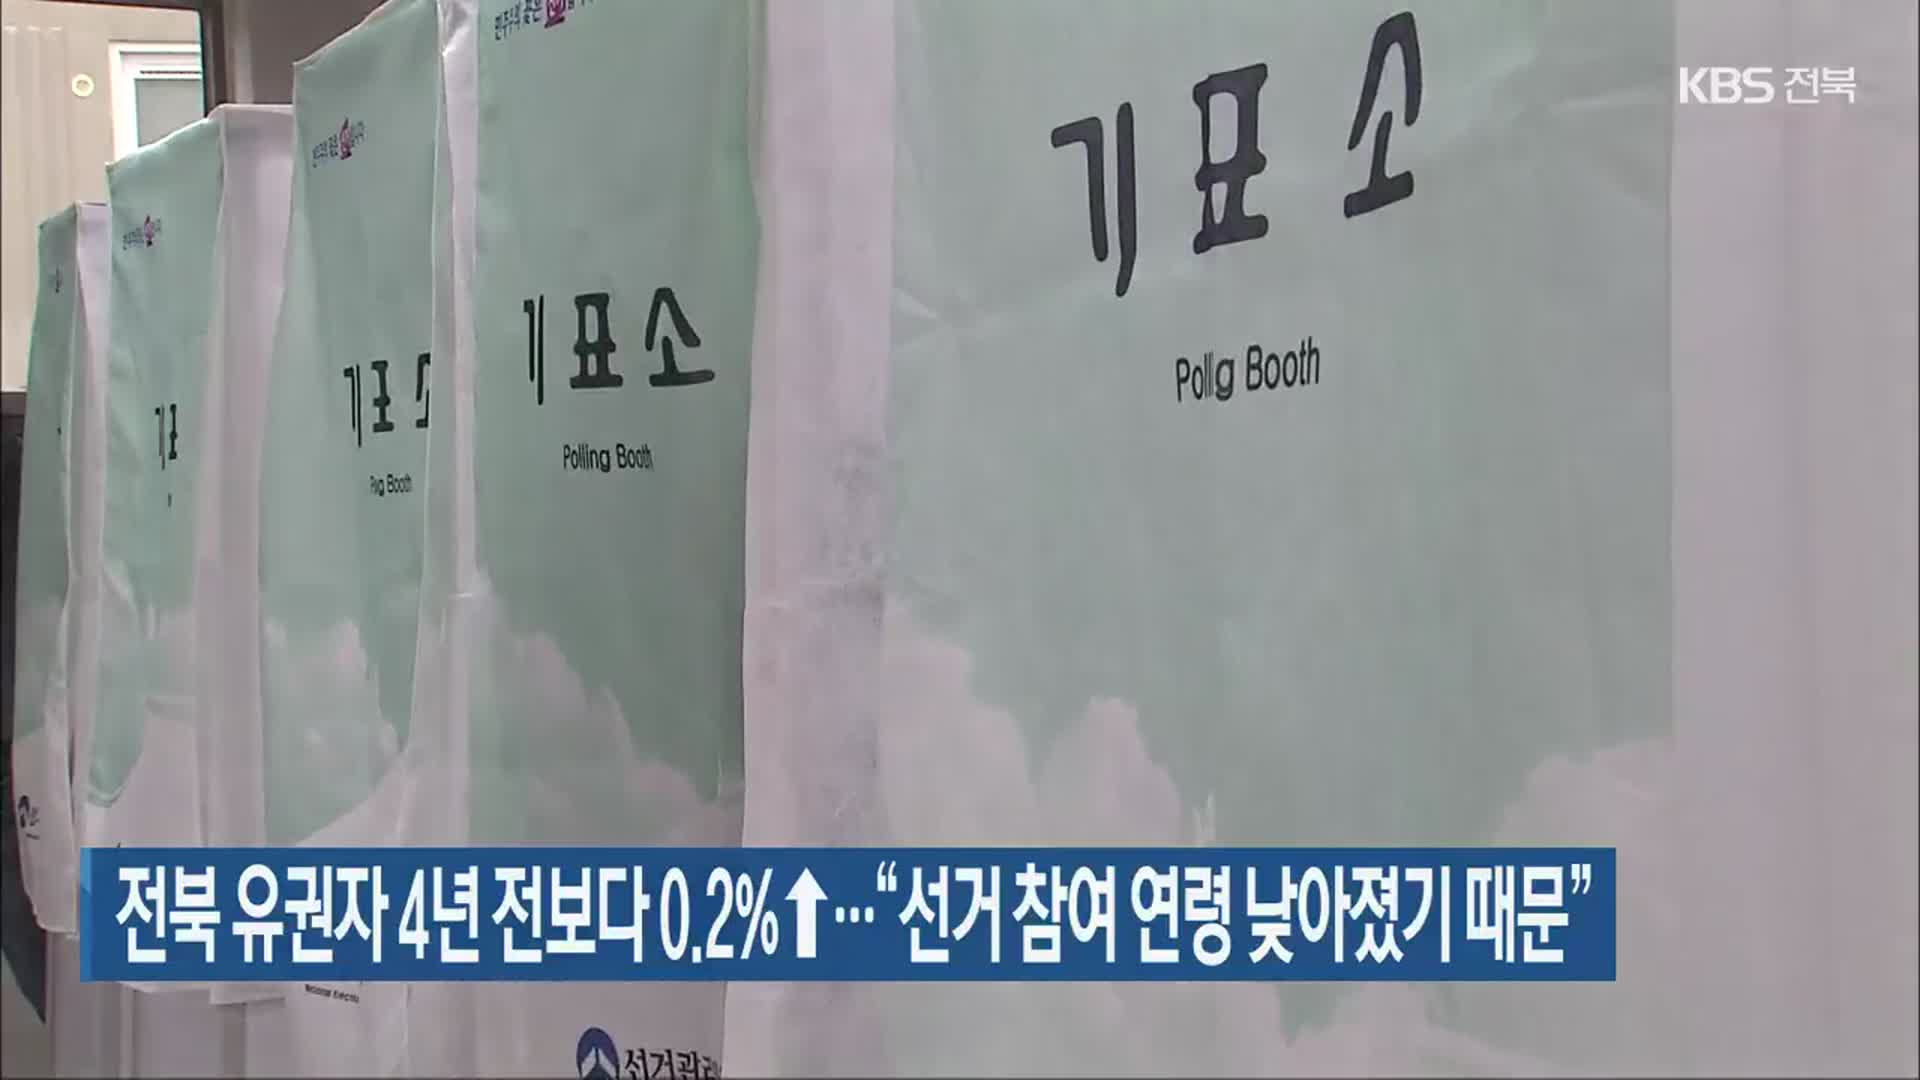 전북 유권자 4년 전보다 0.2%↑…“선거 참여 연령 낮아졌기 때문”